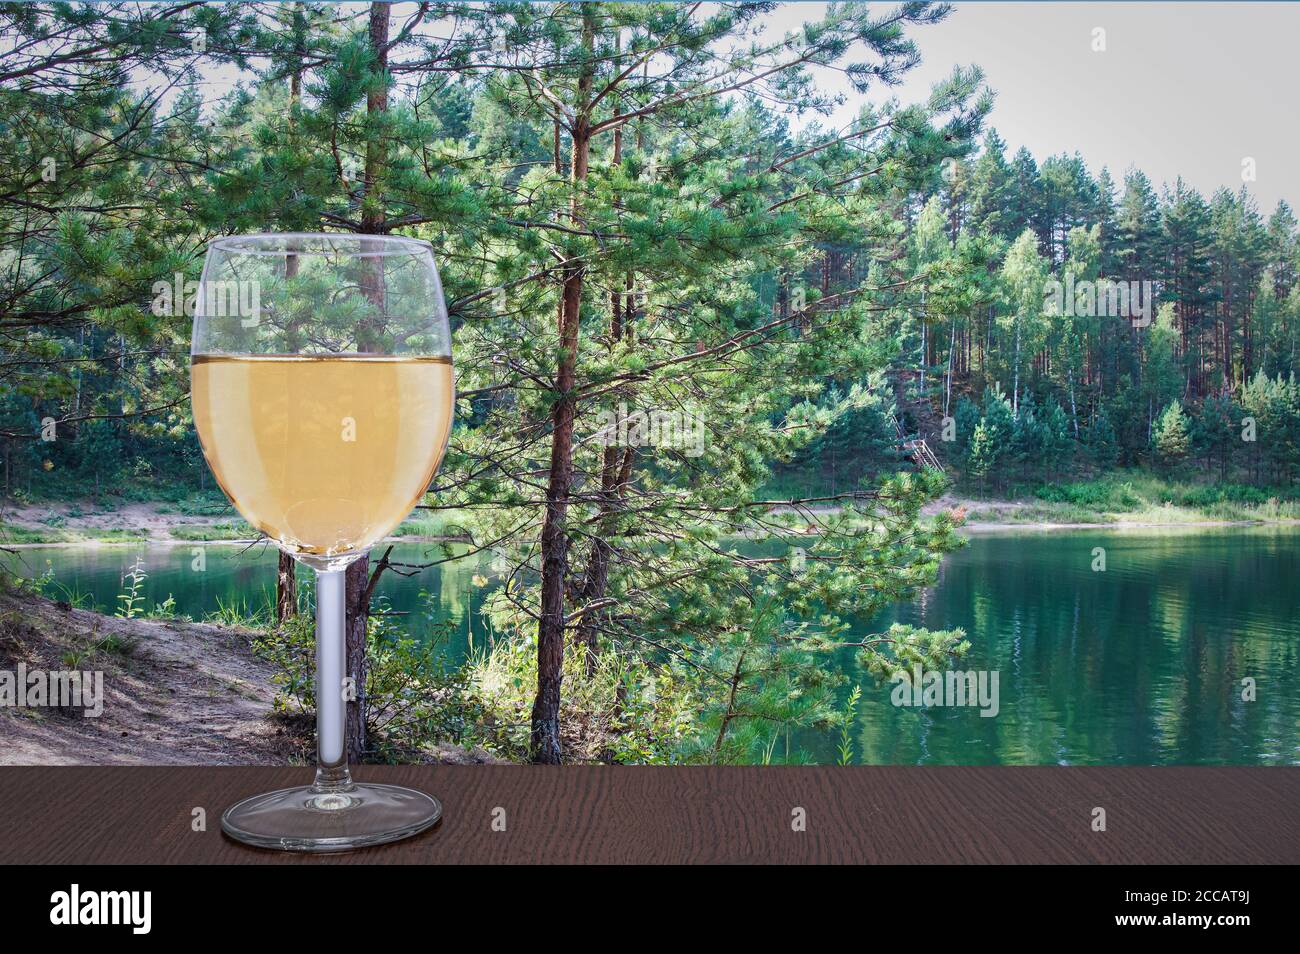 Verre de vin blanc contre un petit arbre à pipe près du lac turquoise. Forêt d'été avec des arbres à pipe, Lettonie Banque D'Images